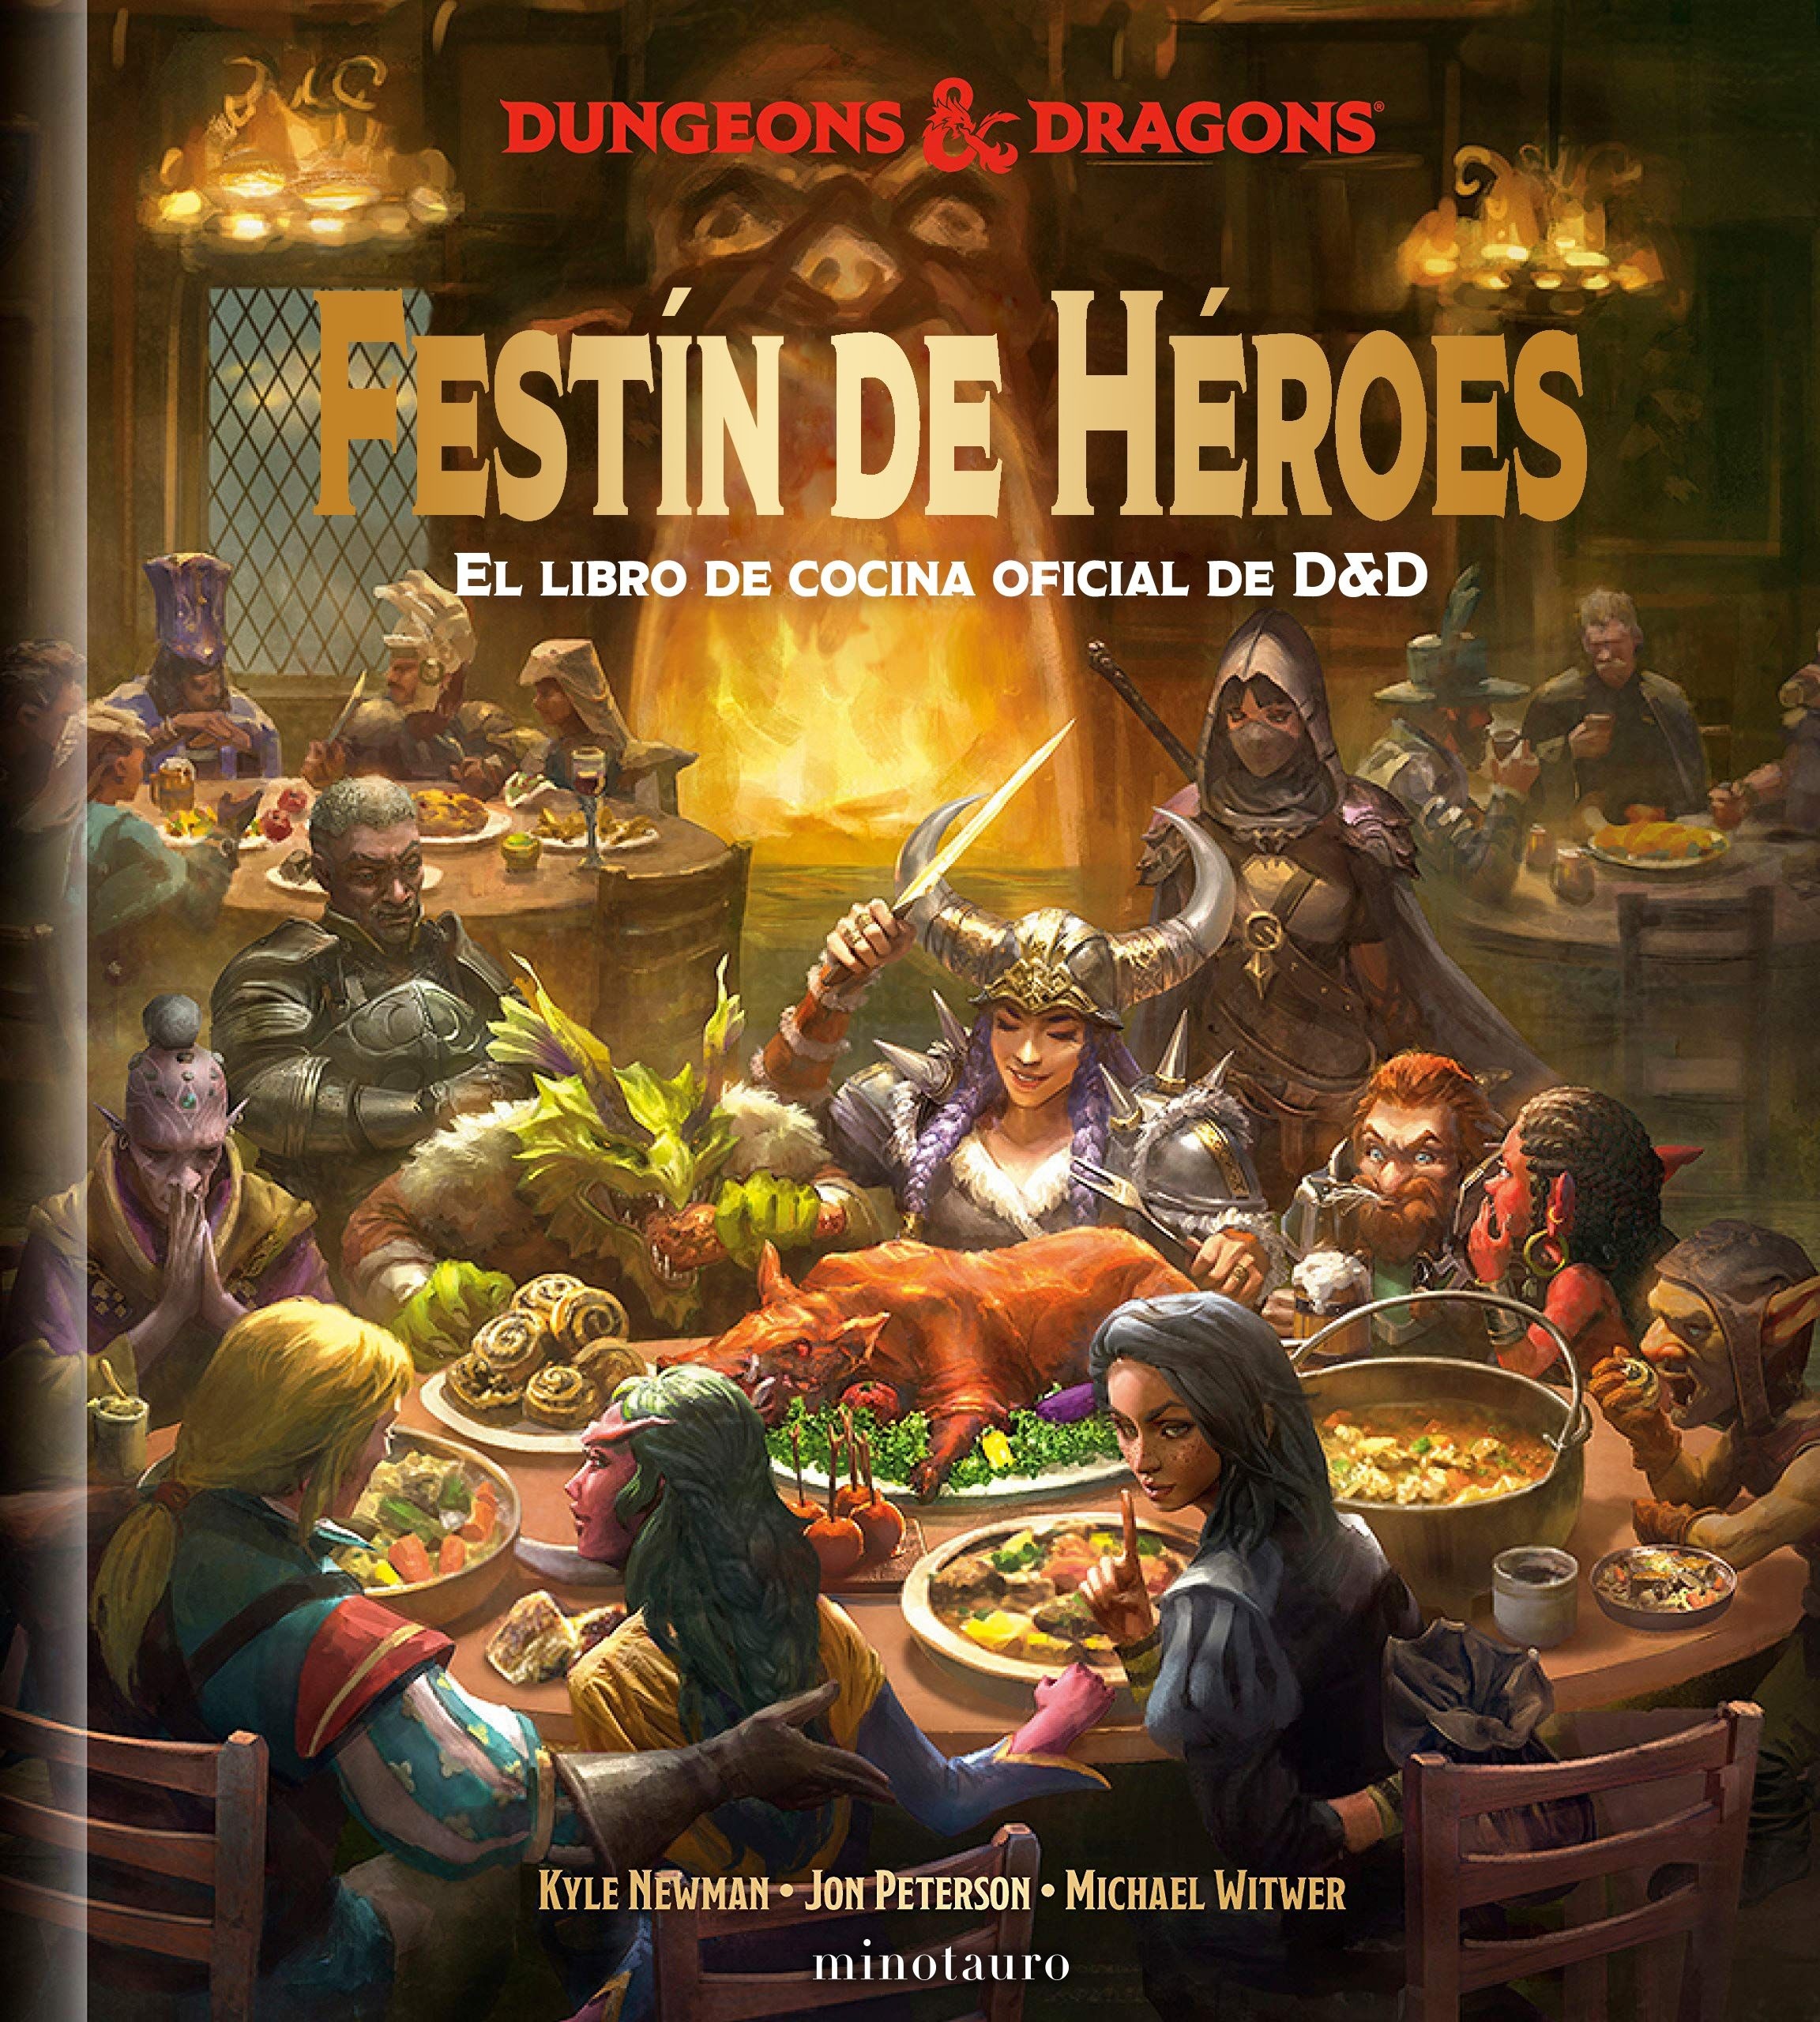 Festín de Héroes "El libro de cocina oficial de Dungeons & Dragons"